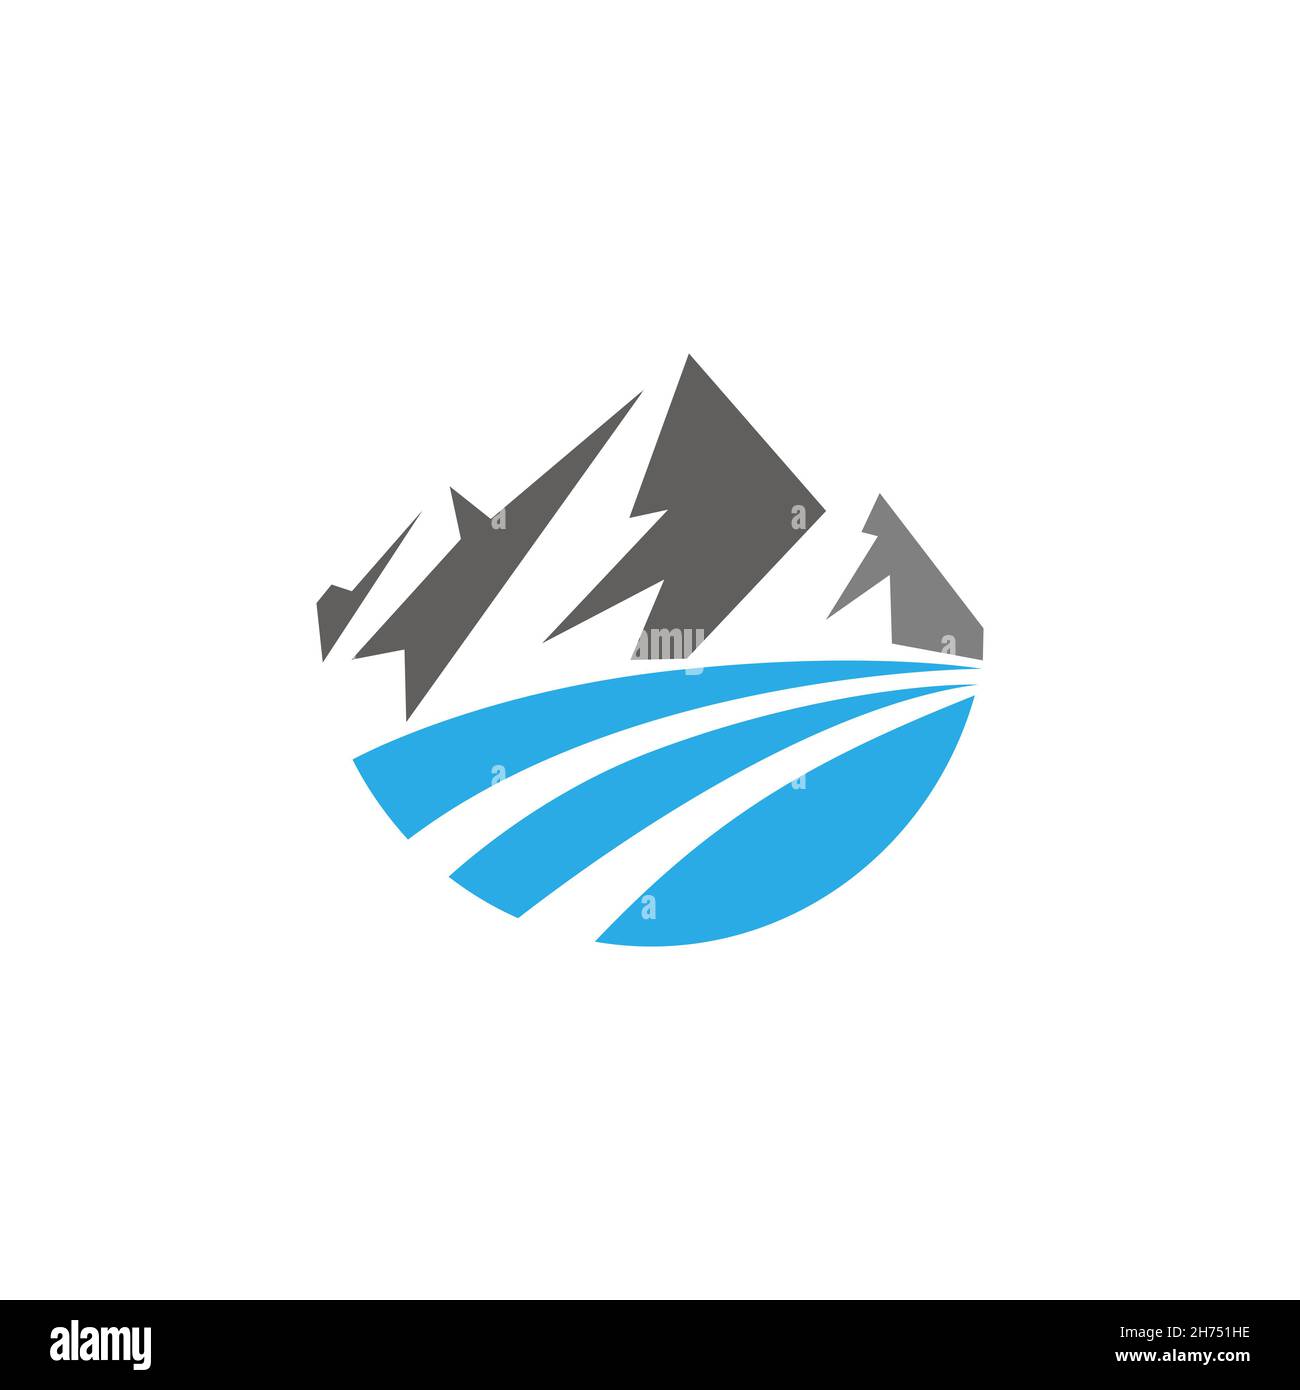 abstract mountain logo icon flat vector design concept graphic Stock Photo